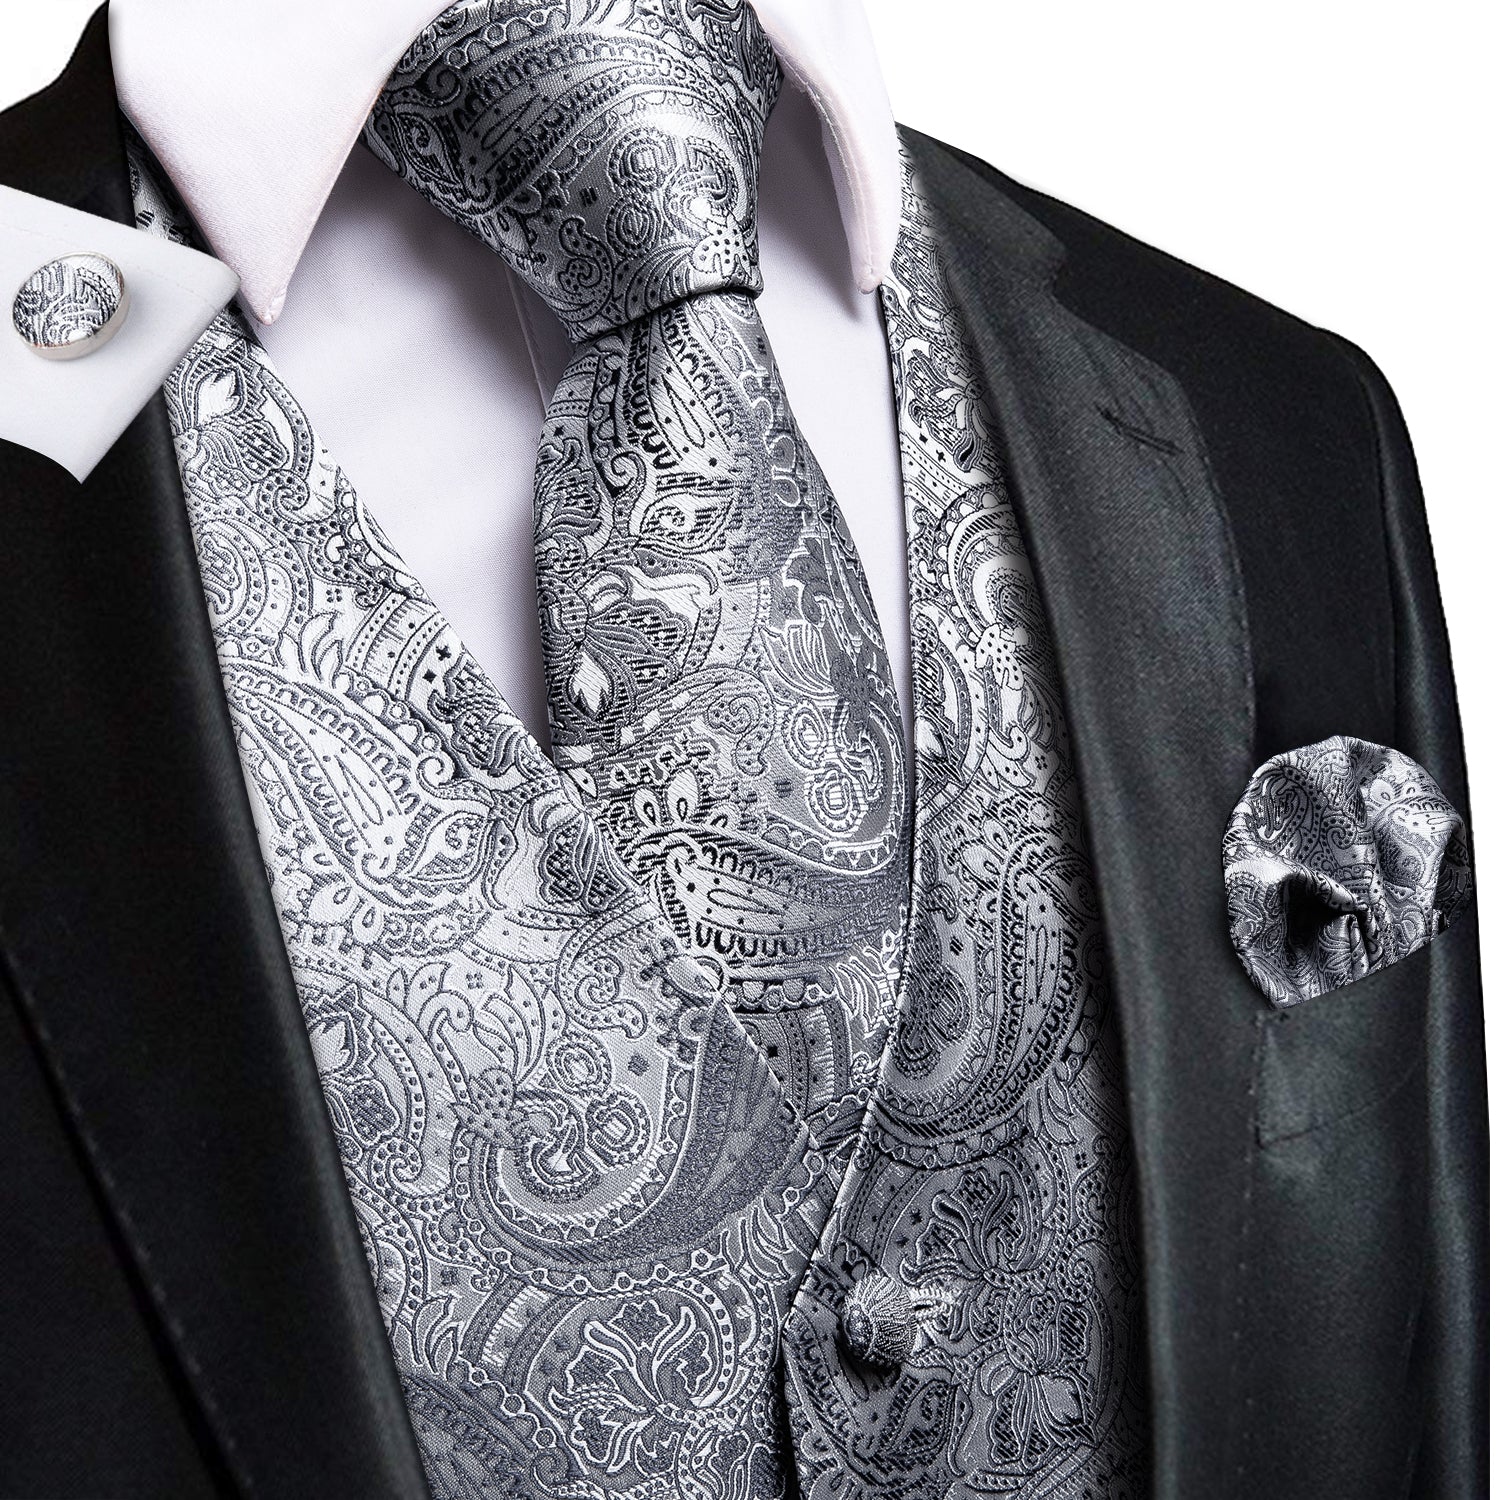 Silver Grey Paisley Silk Men's Vest Hanky Cufflinks Tie Set Waistcoat Suit Set